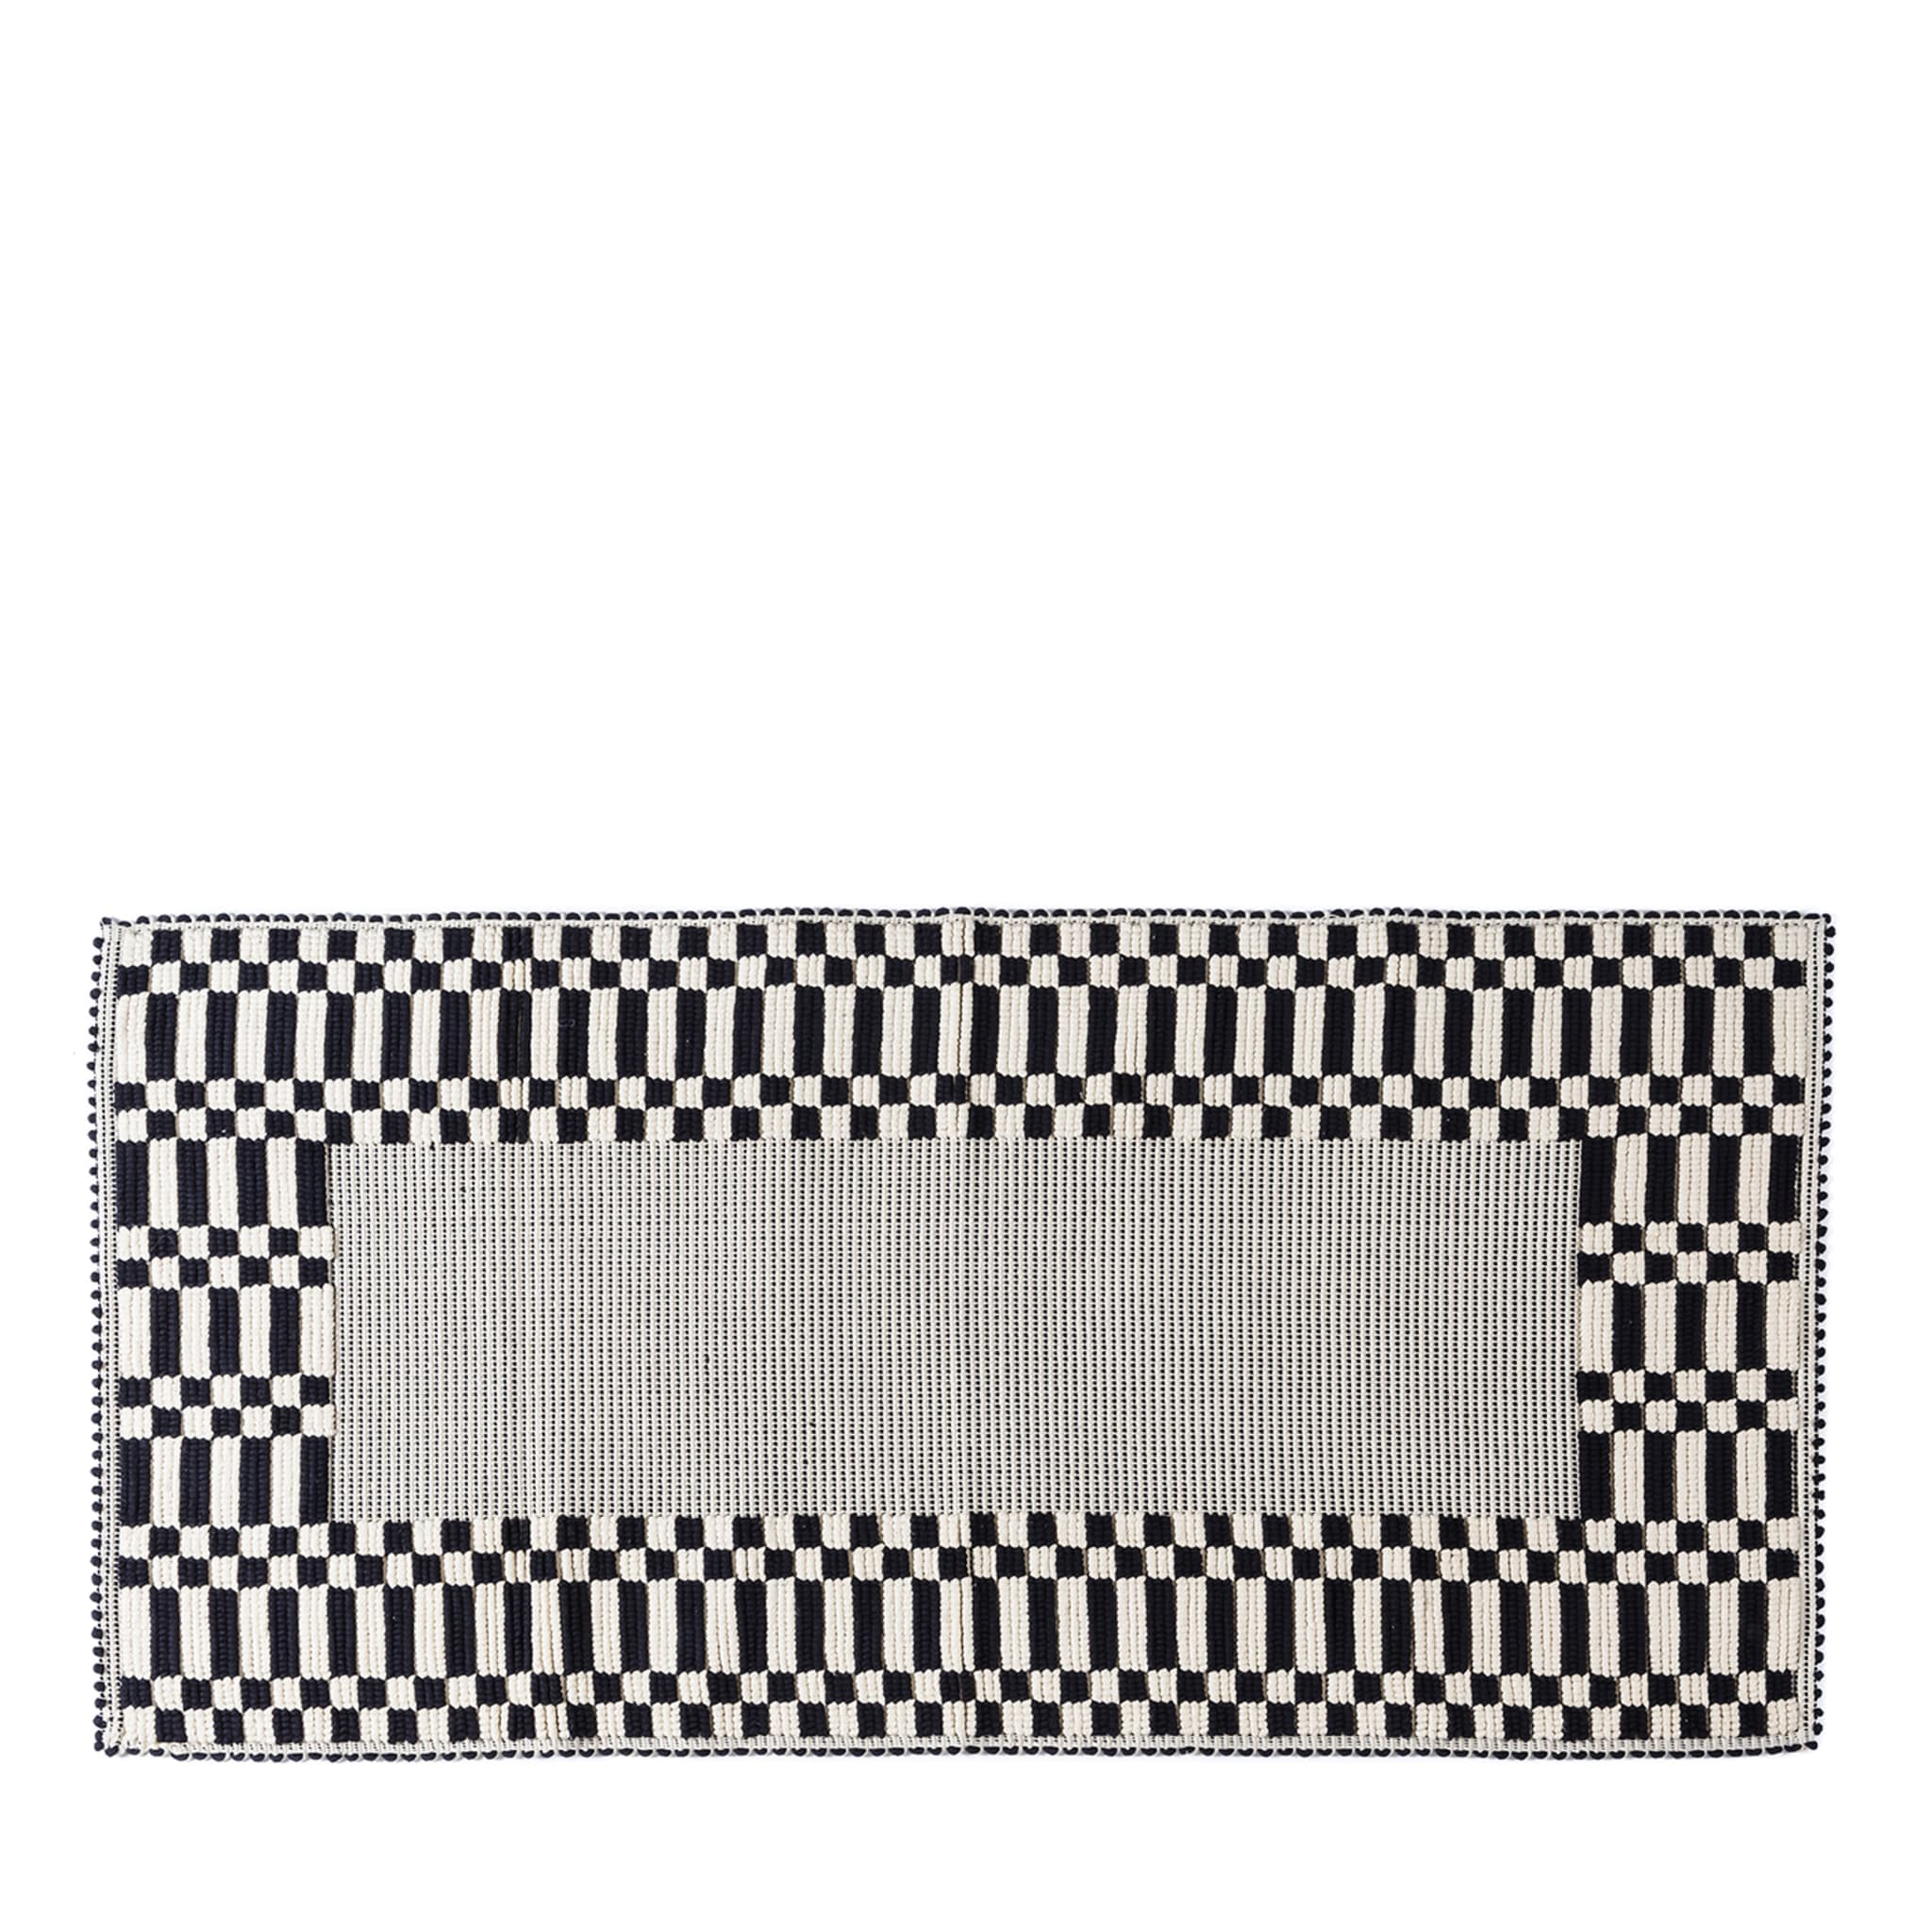 Bisaccia Checkered Black and White Rectangular Rug - Main view